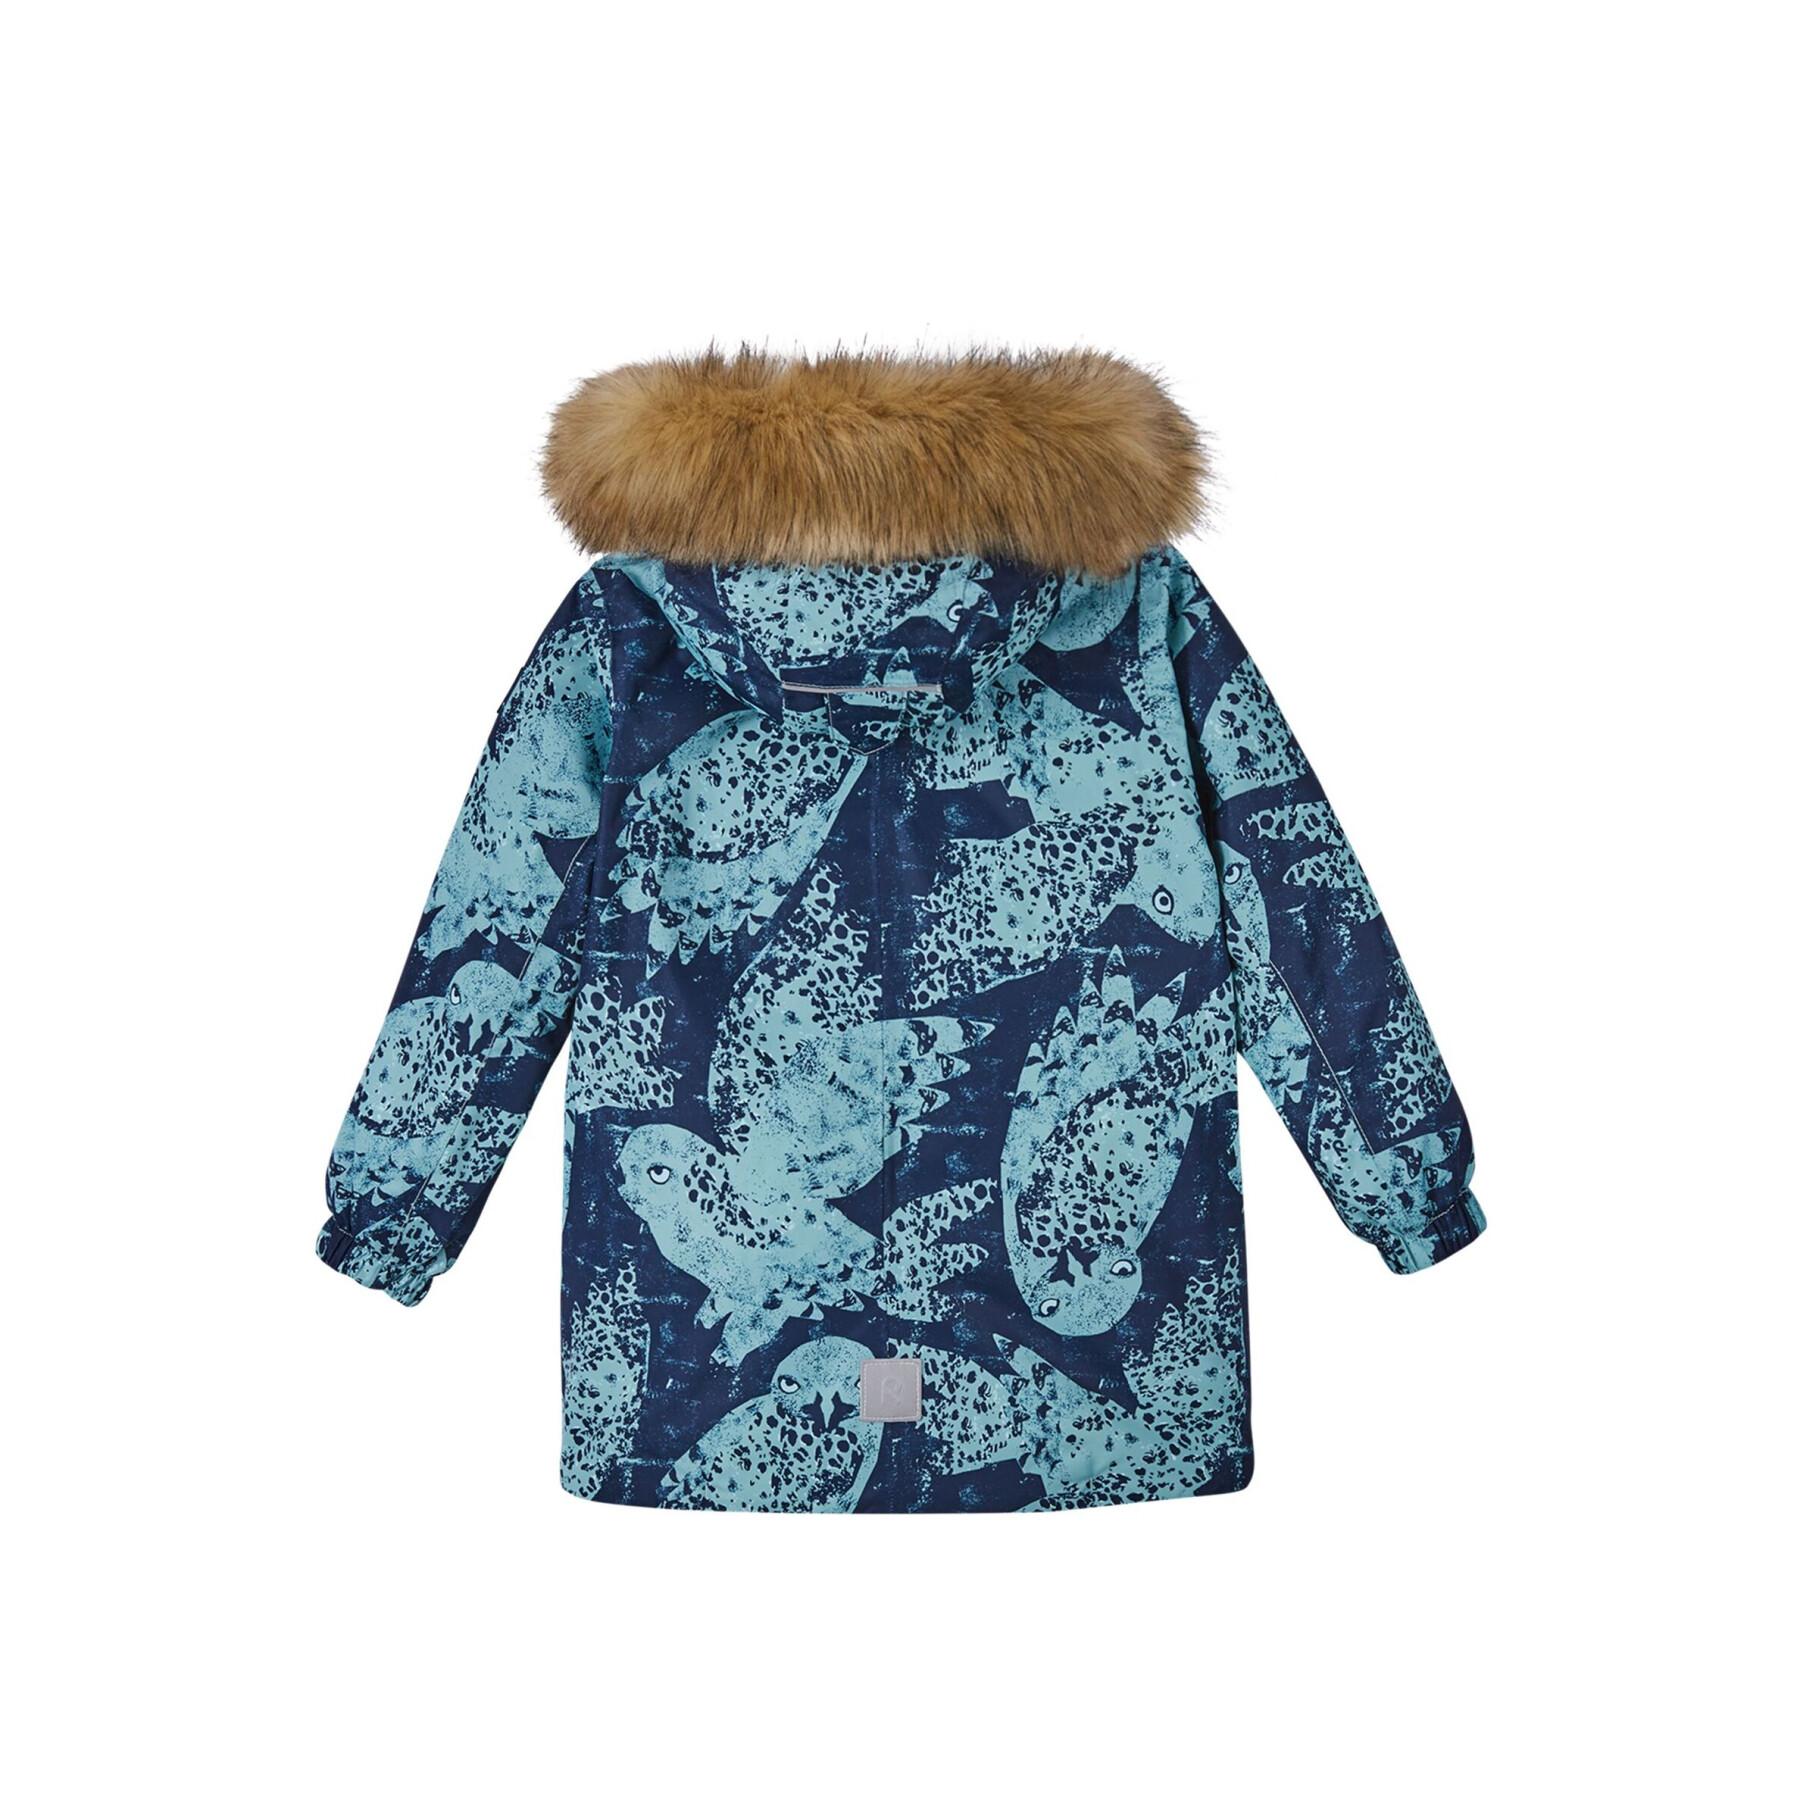 Waterproof baby jacket Reima Reima tec Musko